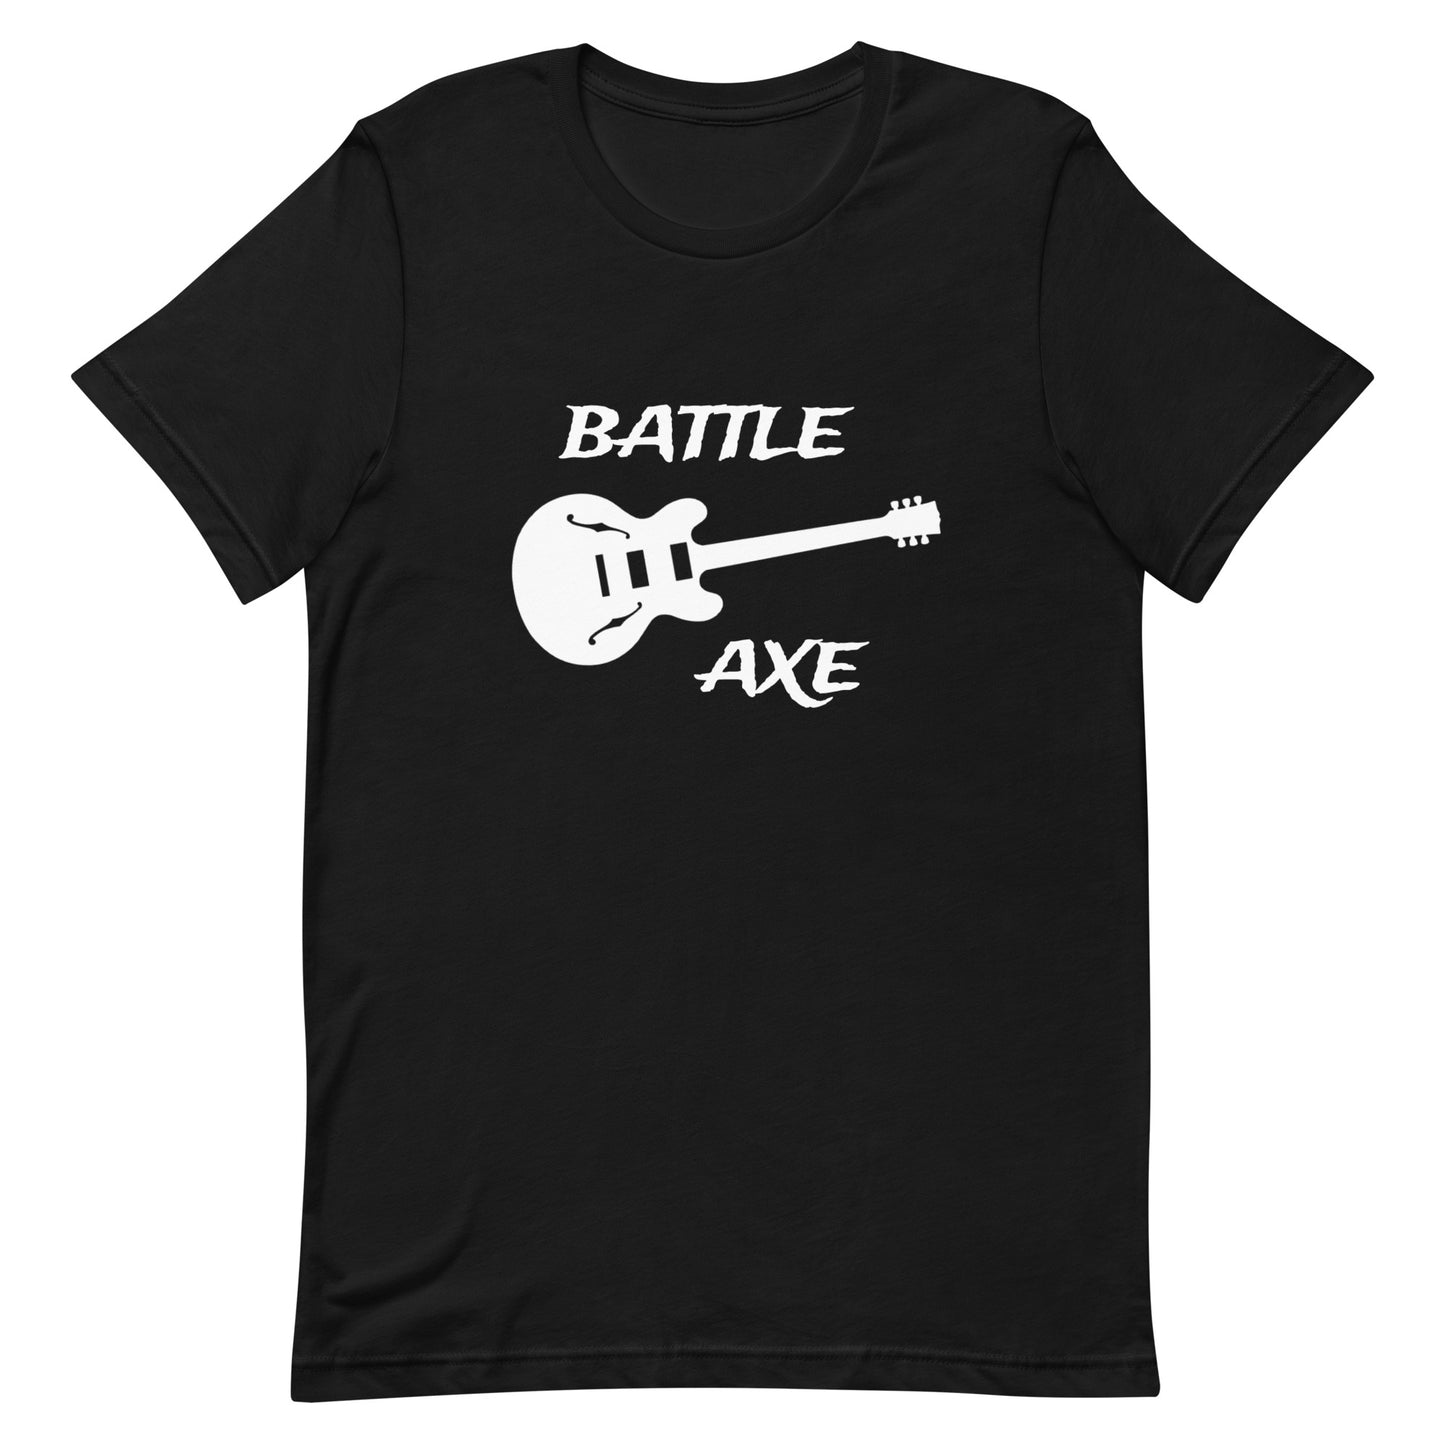 Battleaxe 6